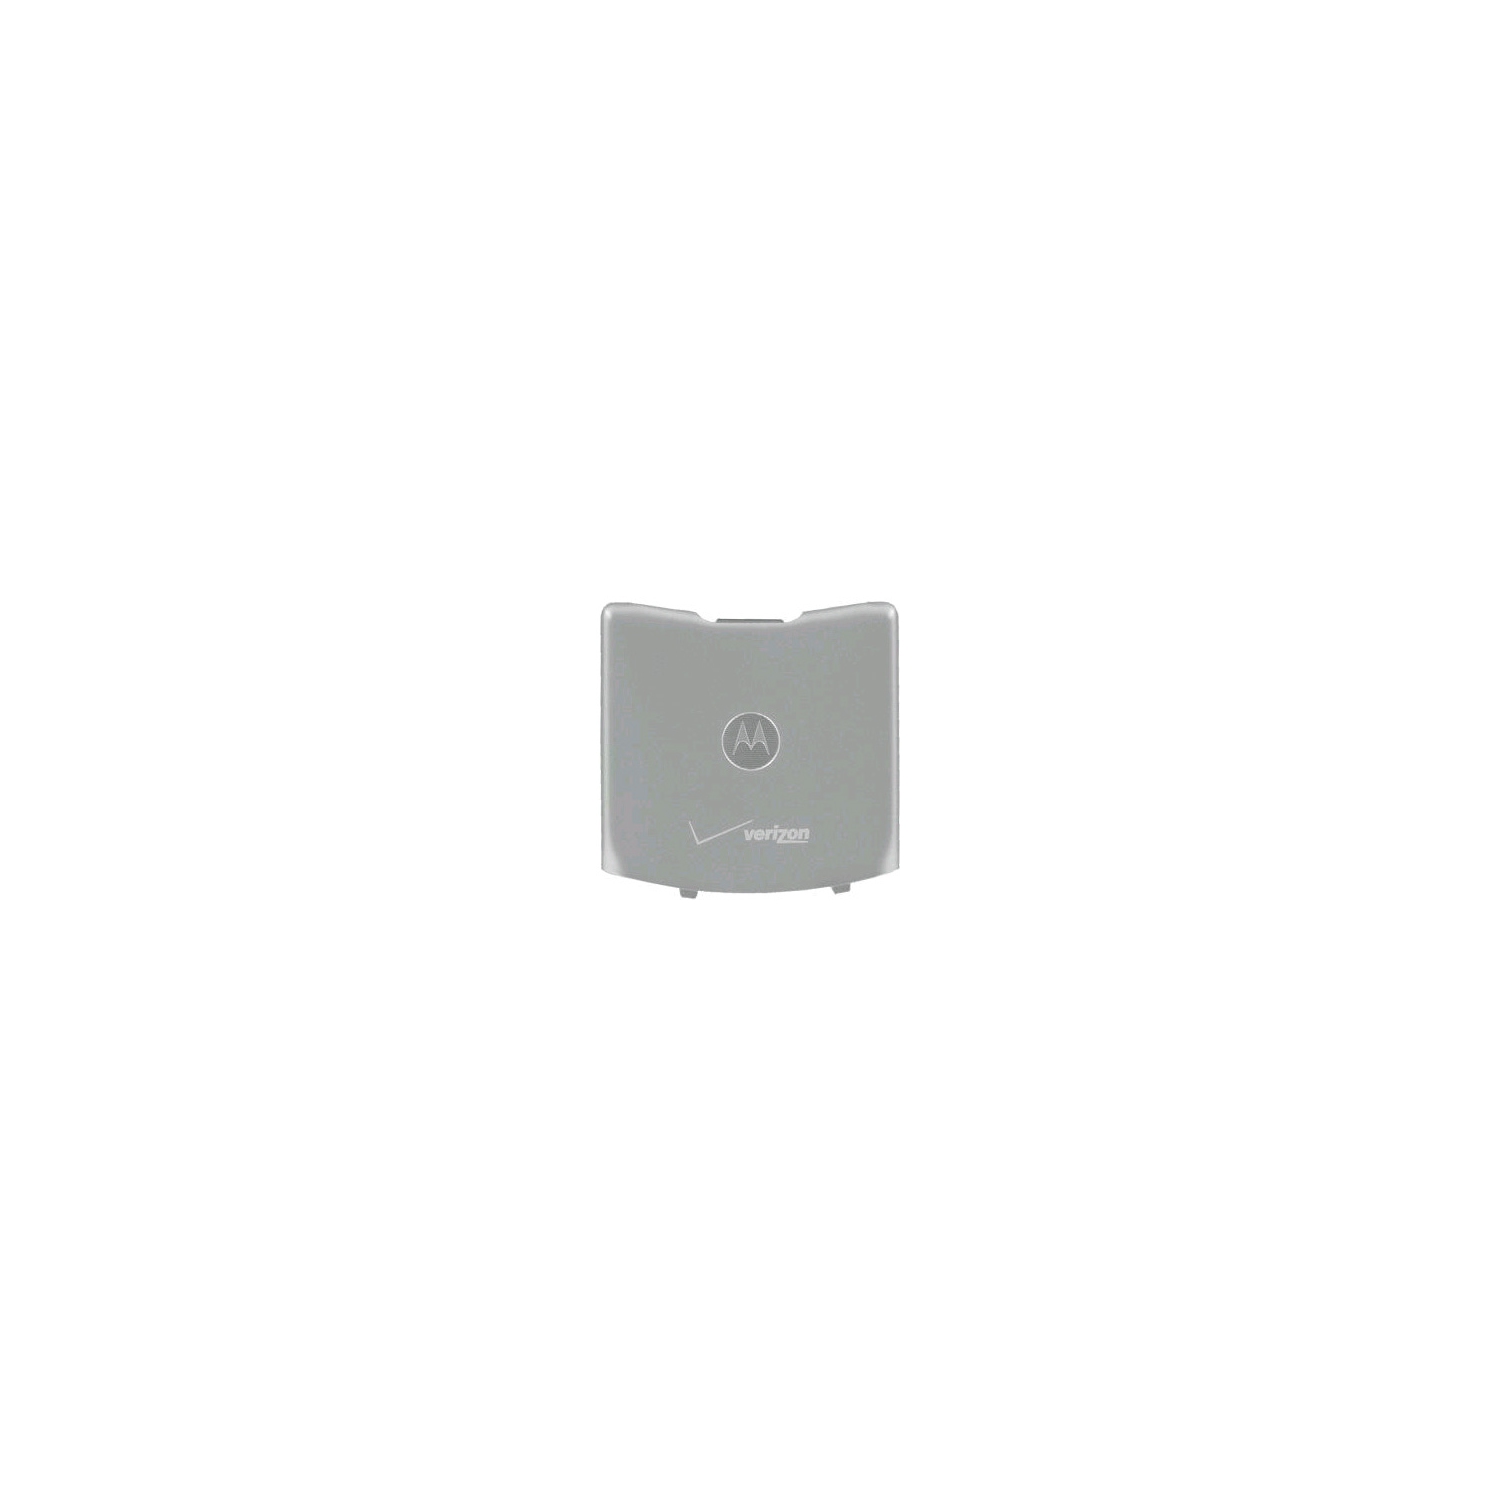 OEM Motorola RAZR V3m Standard Battery Door / Cover - Silver (Bulk Packaging)